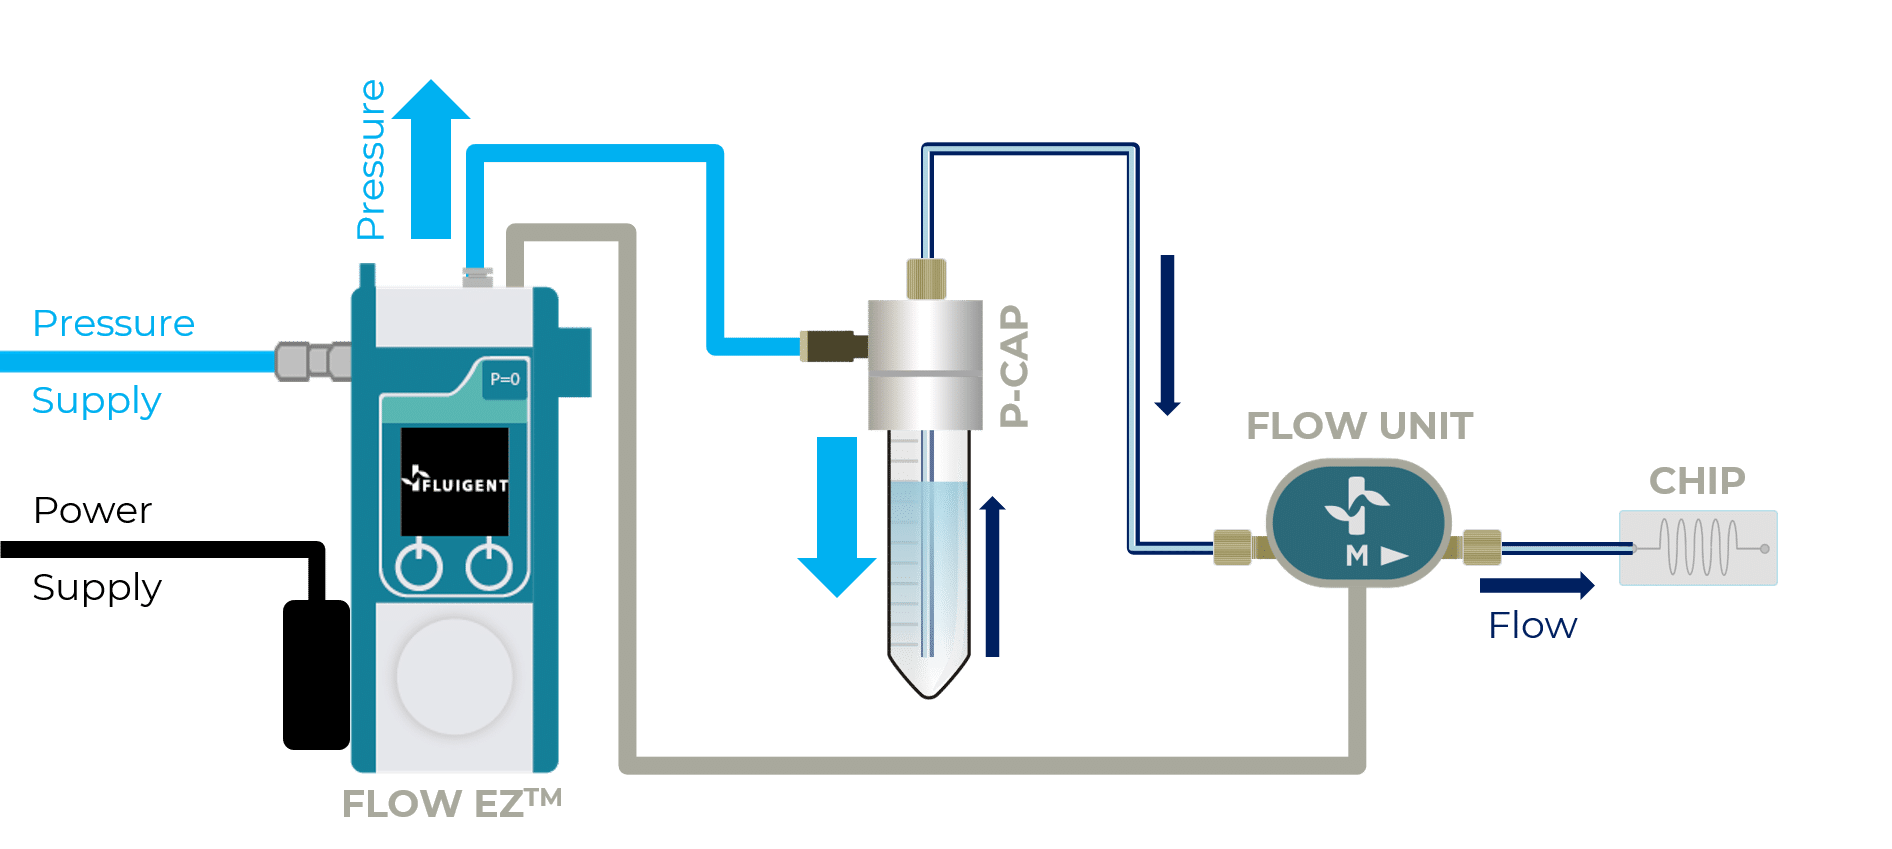 flow ez flow controller schematic